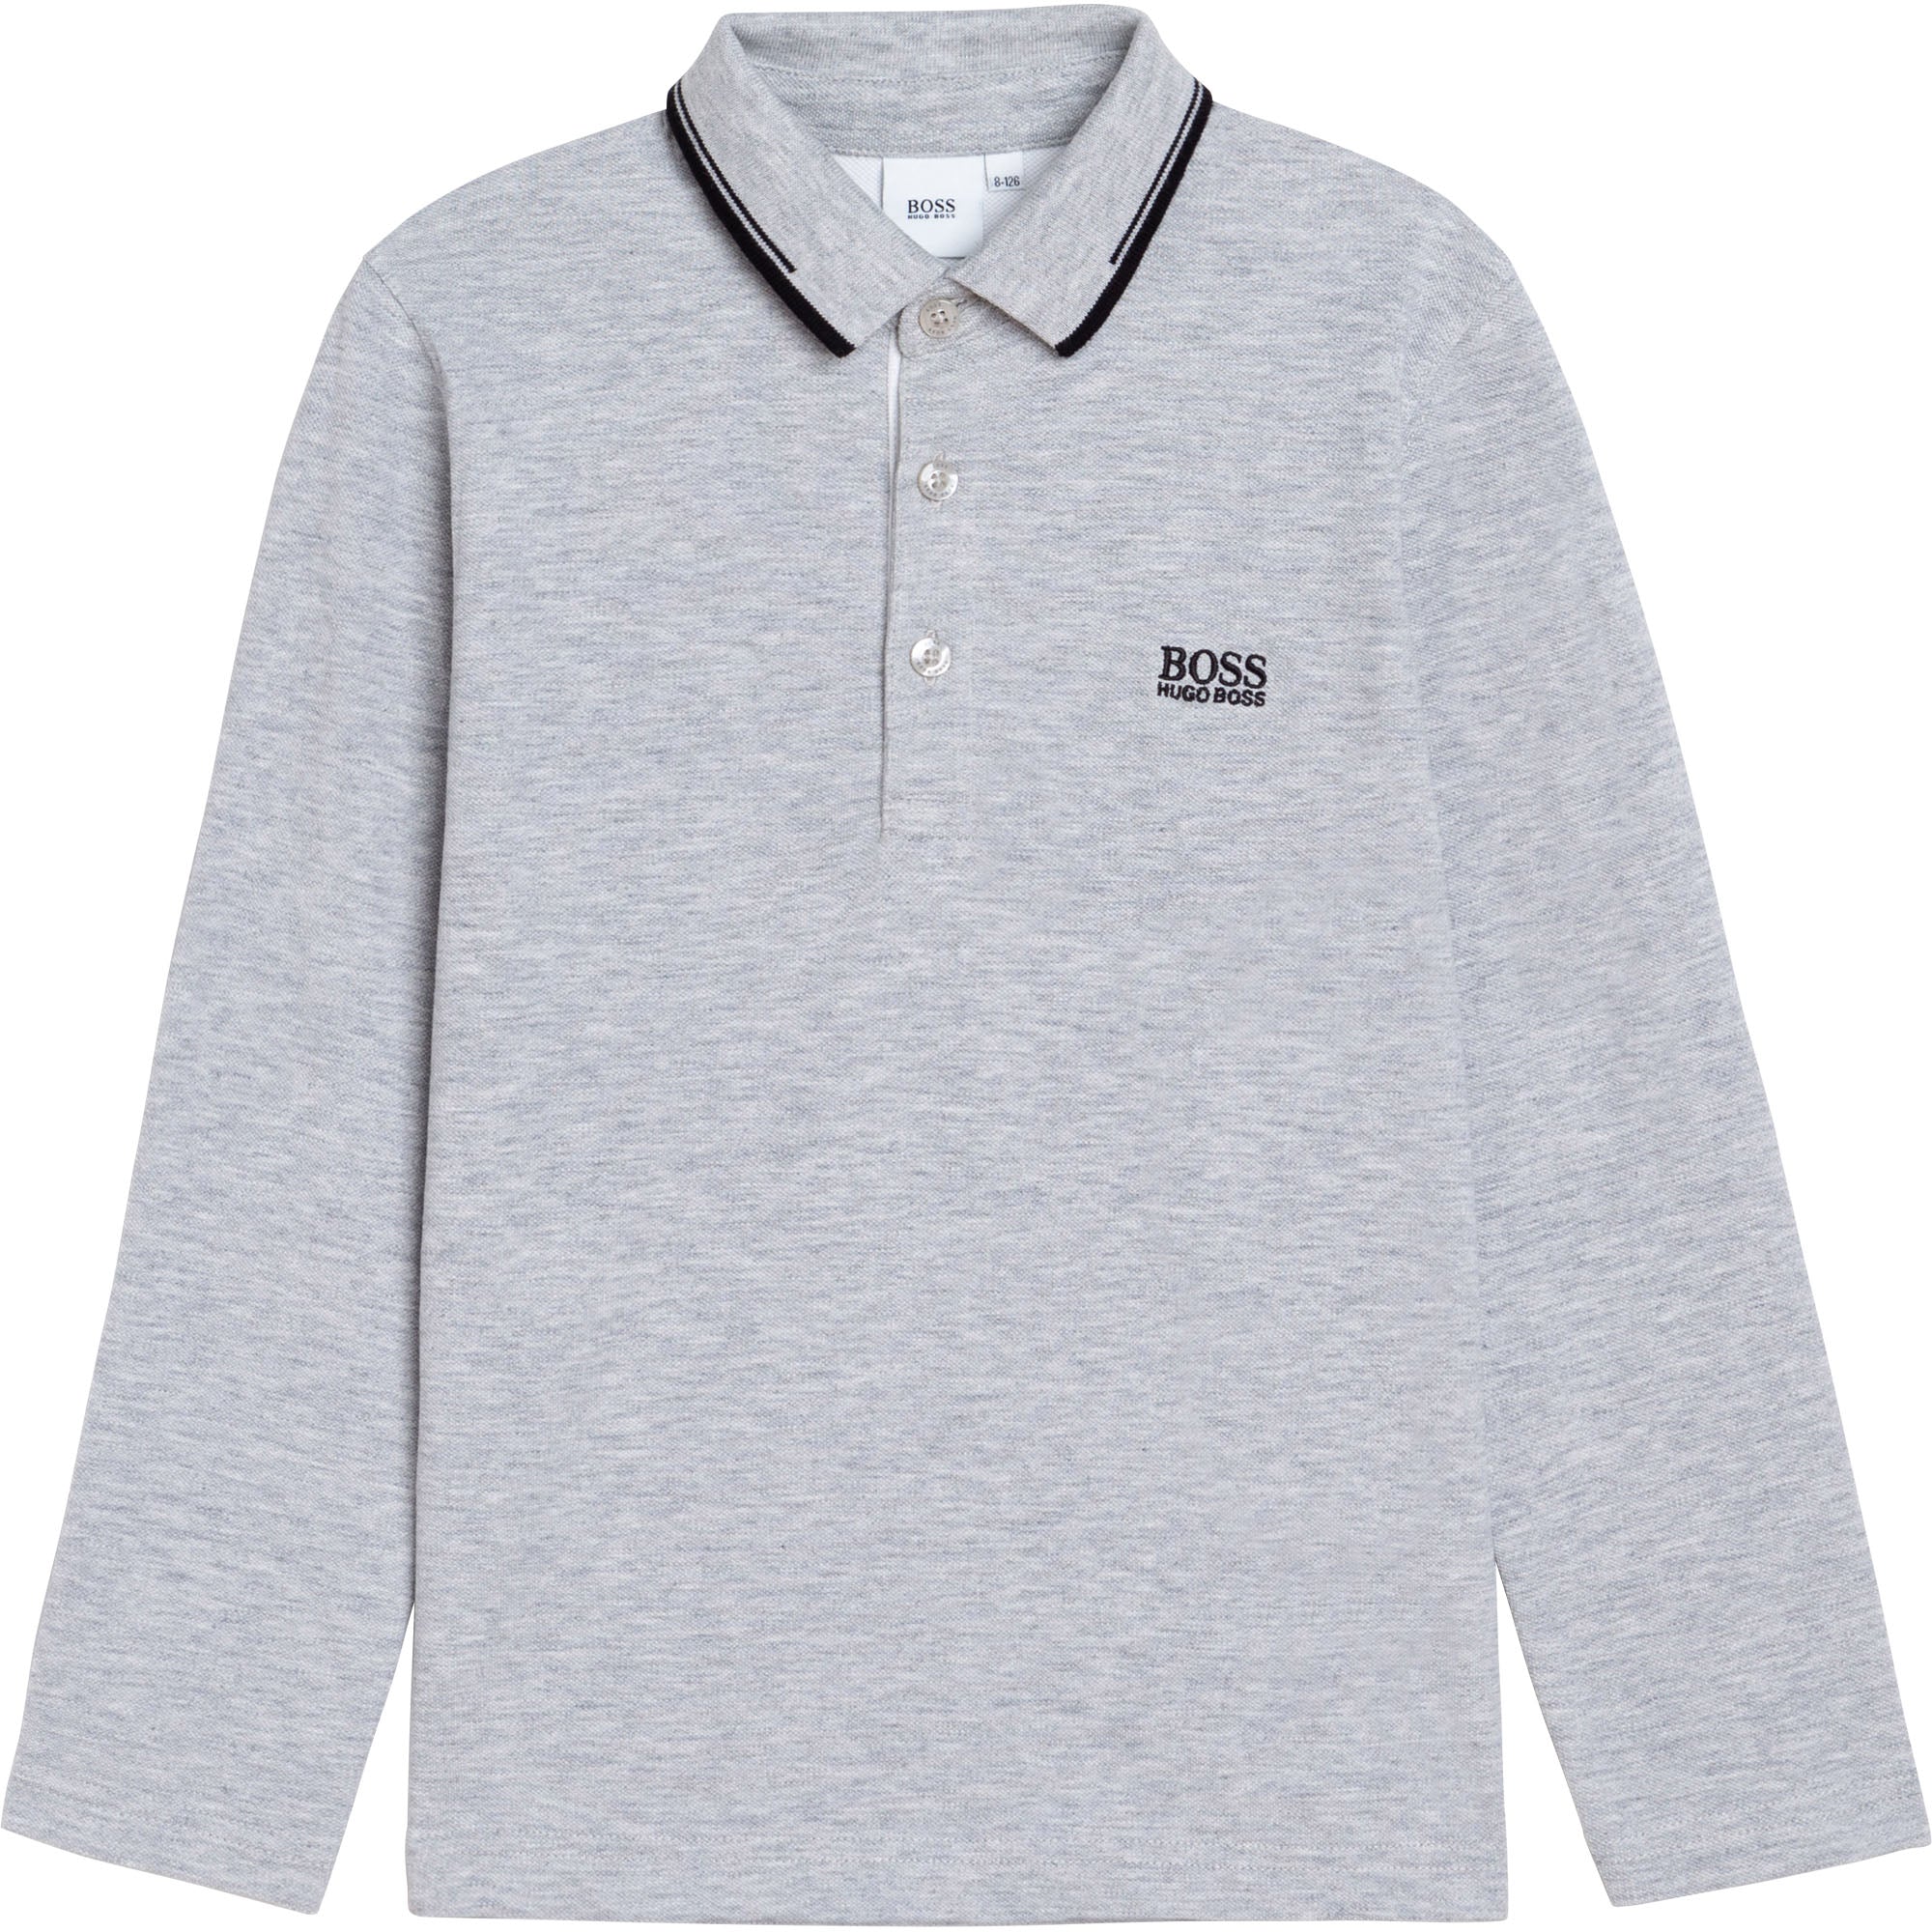 Boys Grey Polo Shirt